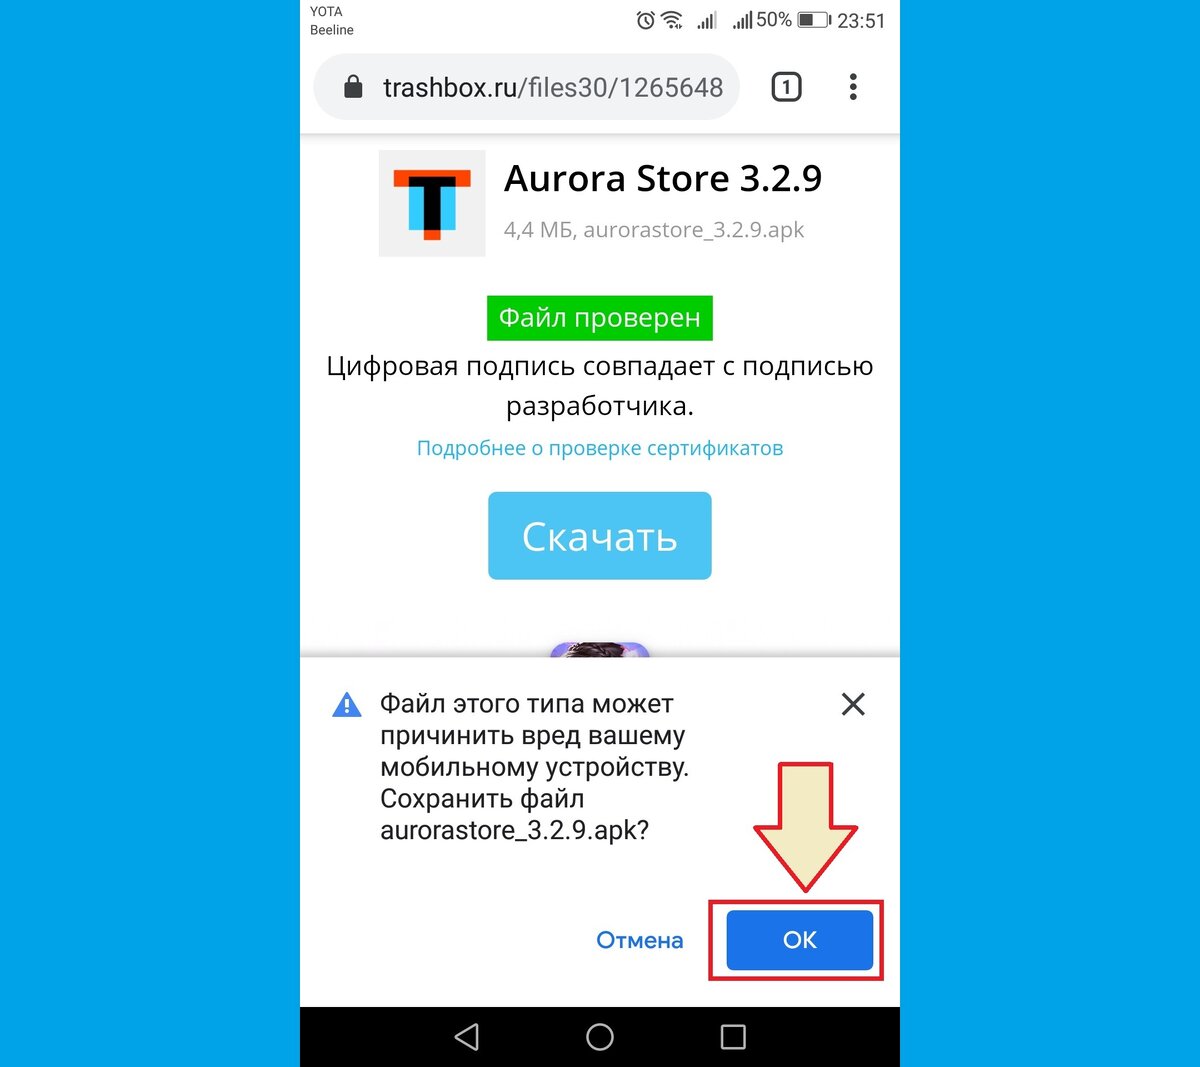 Установить приложение телеграмм бесплатно на русском языке на телефон без регистрации для андроид фото 117